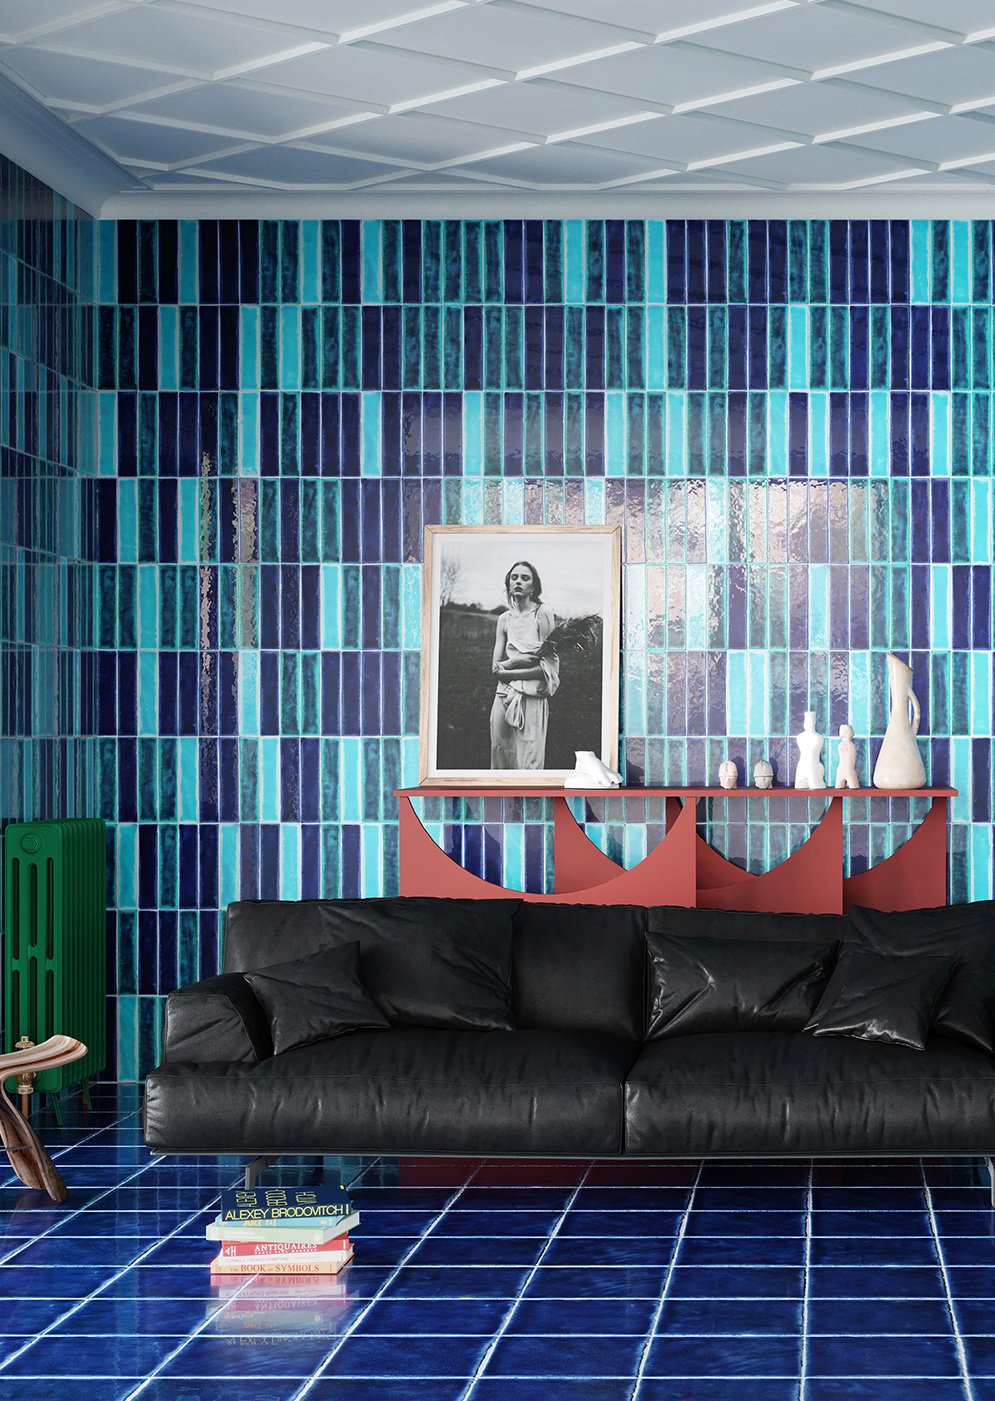 Wall:
Oceano Blu Rettangolo 7x30 + Azzurro Mare Rettangolo 7x30 + Turchese Abbamar Rettangolo 7x30 Floor: Oceano Blu 30x30 Serie I Cotti Fatti a Mano Cerasarda Piastrelle & Mosaici